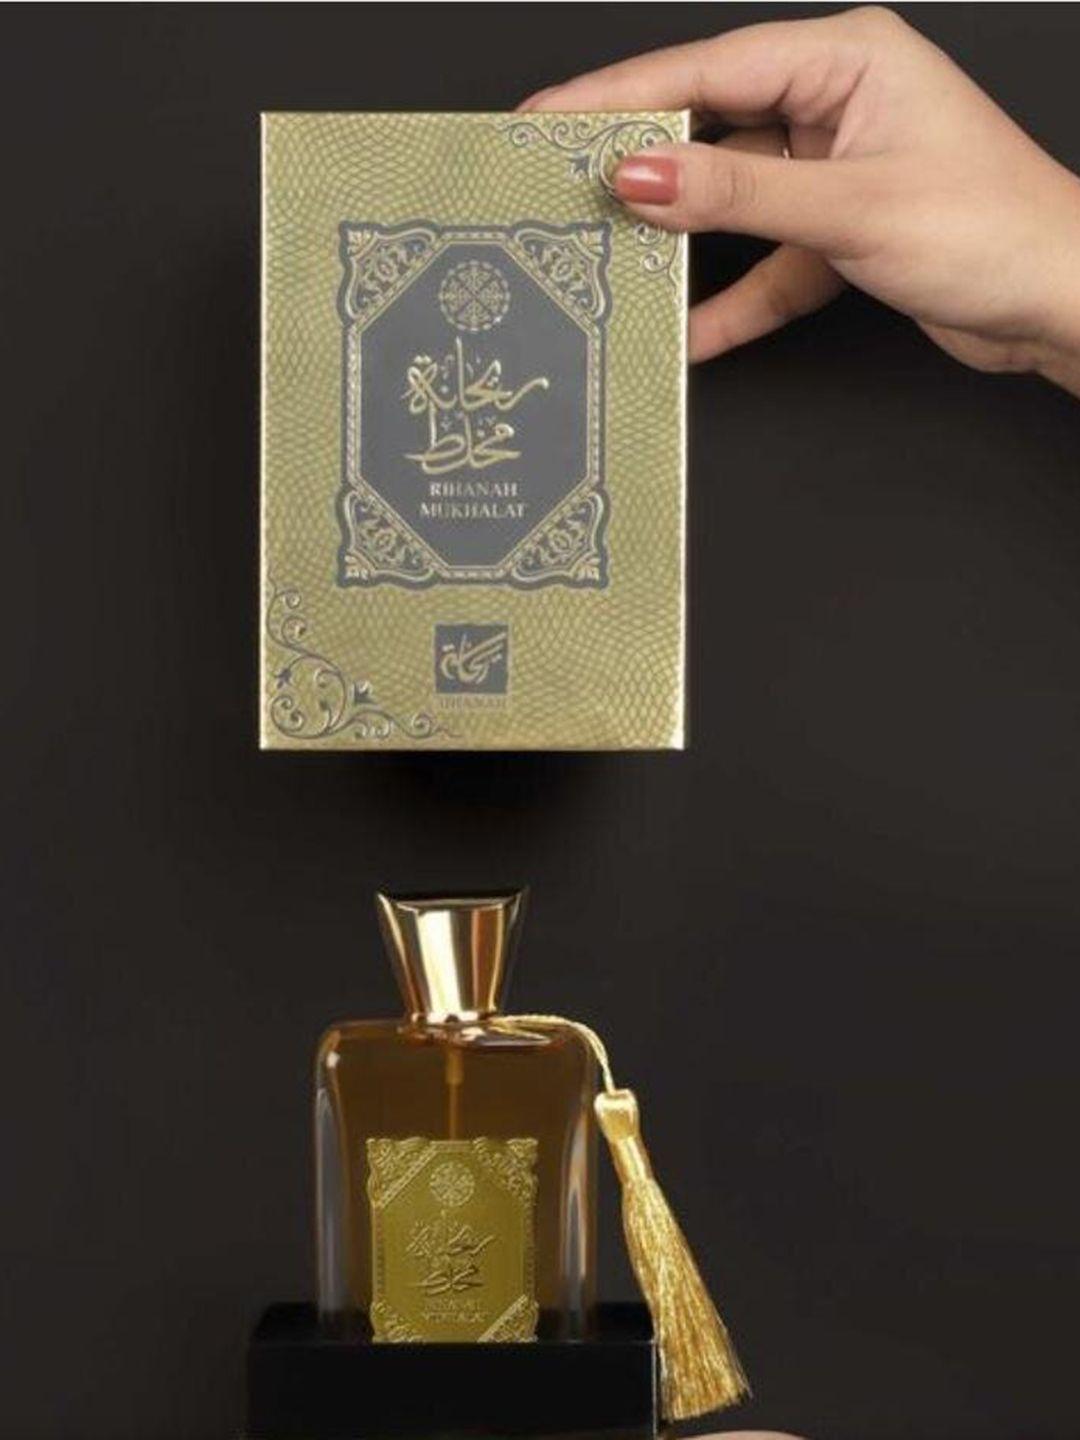 rihanah mukhalat eau de parfum - 100 ml